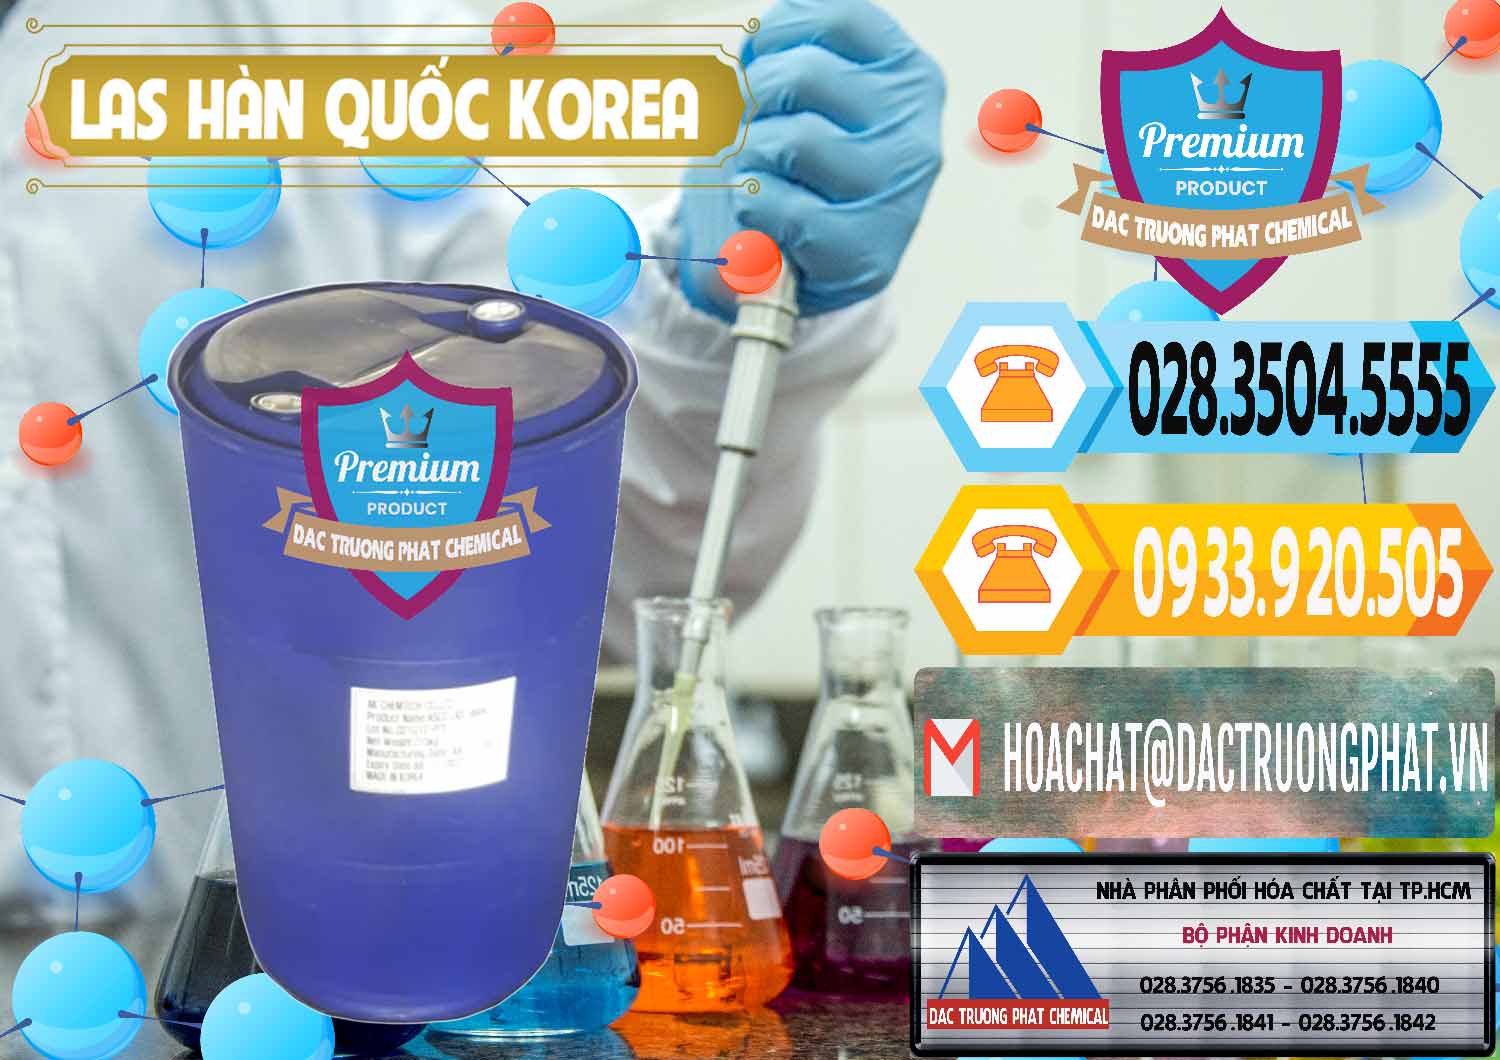 Công ty phân phối và bán Chất tạo bọt Las AK Chemtech ASCO Hàn Quốc Korea - 0271 - Cty kinh doanh và cung cấp hóa chất tại TP.HCM - hoachattayrua.net